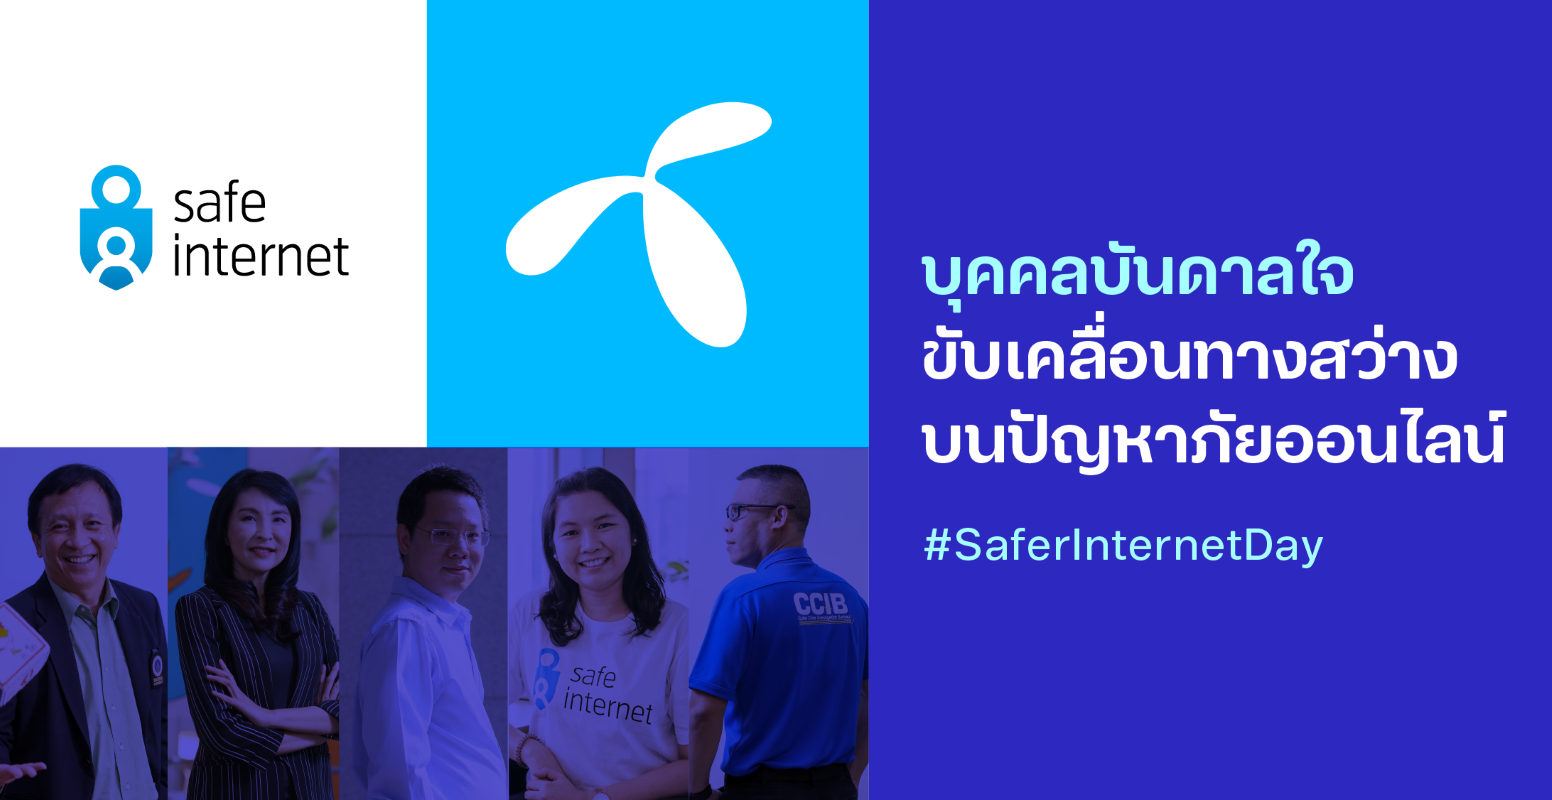 #dtacSafeInternet ชวนมองผ่านความคิดของ 5 นักสู้เพื่อเยาวชนท่องเน็ตปลอดภัยในวัน #SaferInternetDay